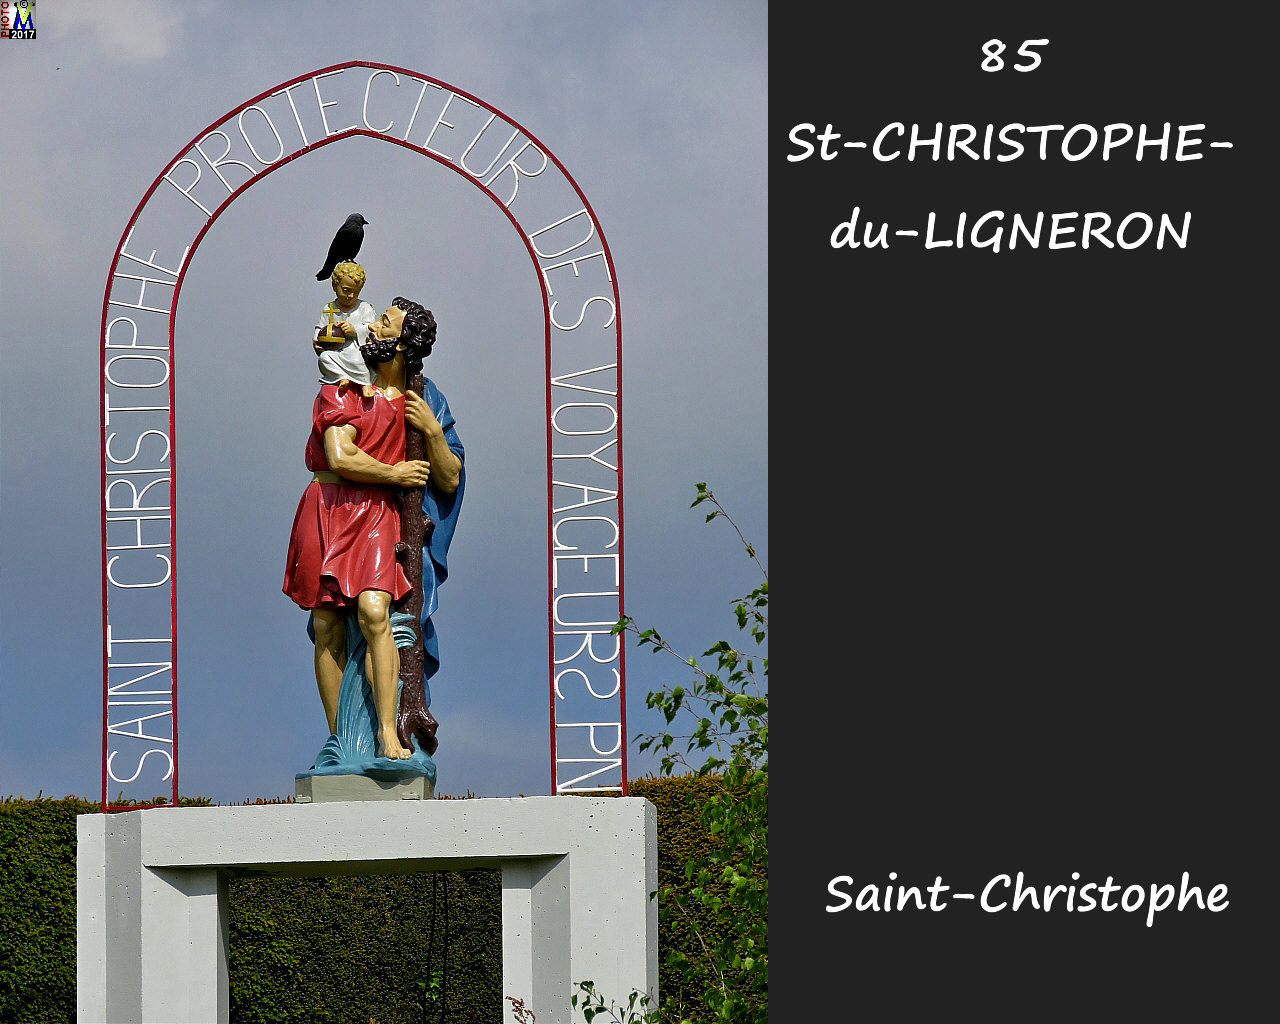 85StCHRISTOPHE-LIGNERON_statue_1000.jpg